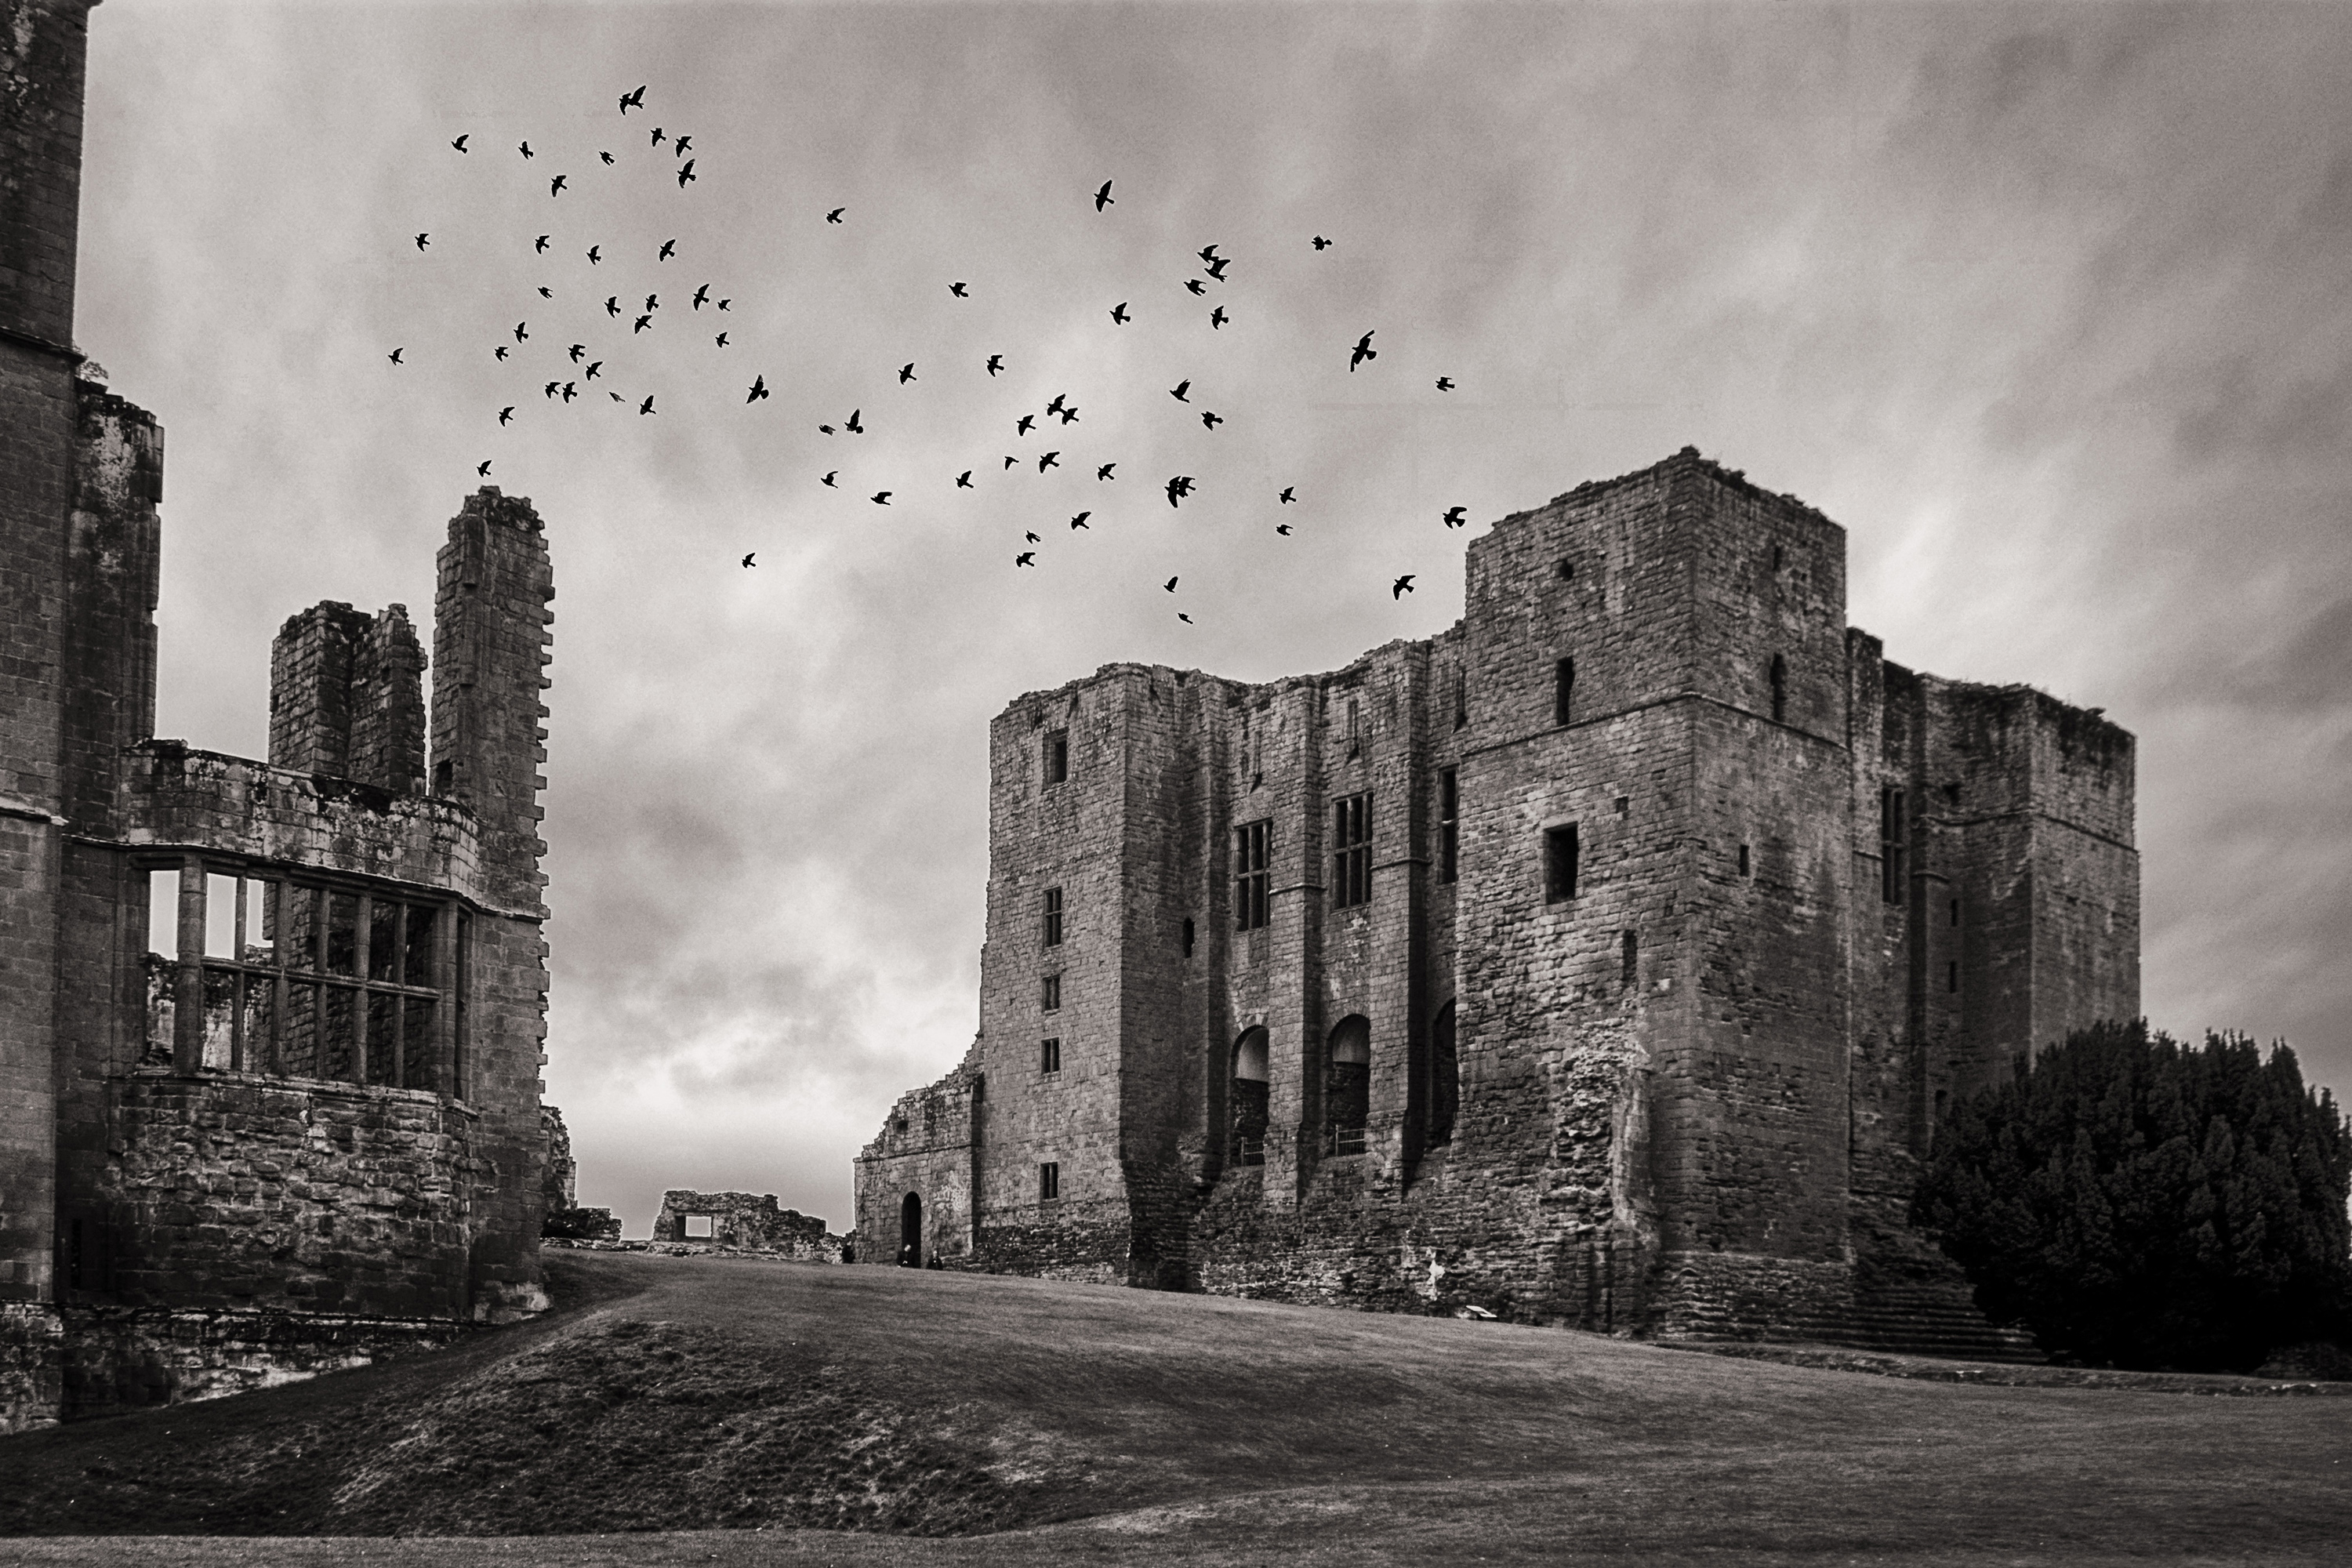 Una foto en blanco y negro del antiguo castillo de Kenilworth contra un cielo tormentoso lleno de pájaros en vuelo evoca la sombría estética de la ficción gótica temprana.